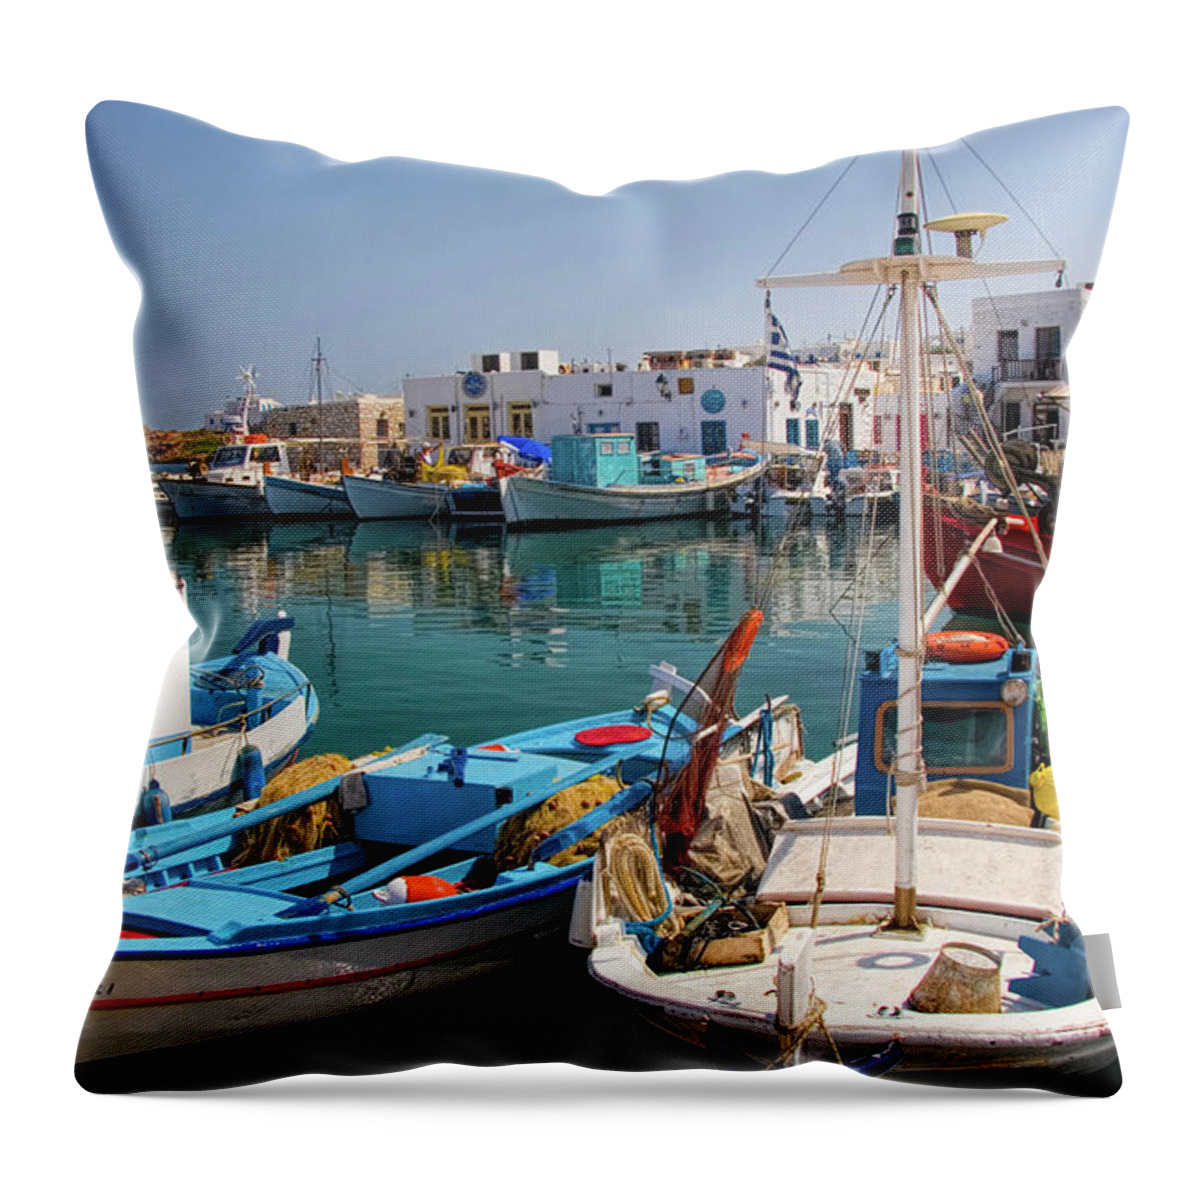 Naoussa Throw Pillow featuring the photograph Naousa Harbor in Paros Greece by David Smith